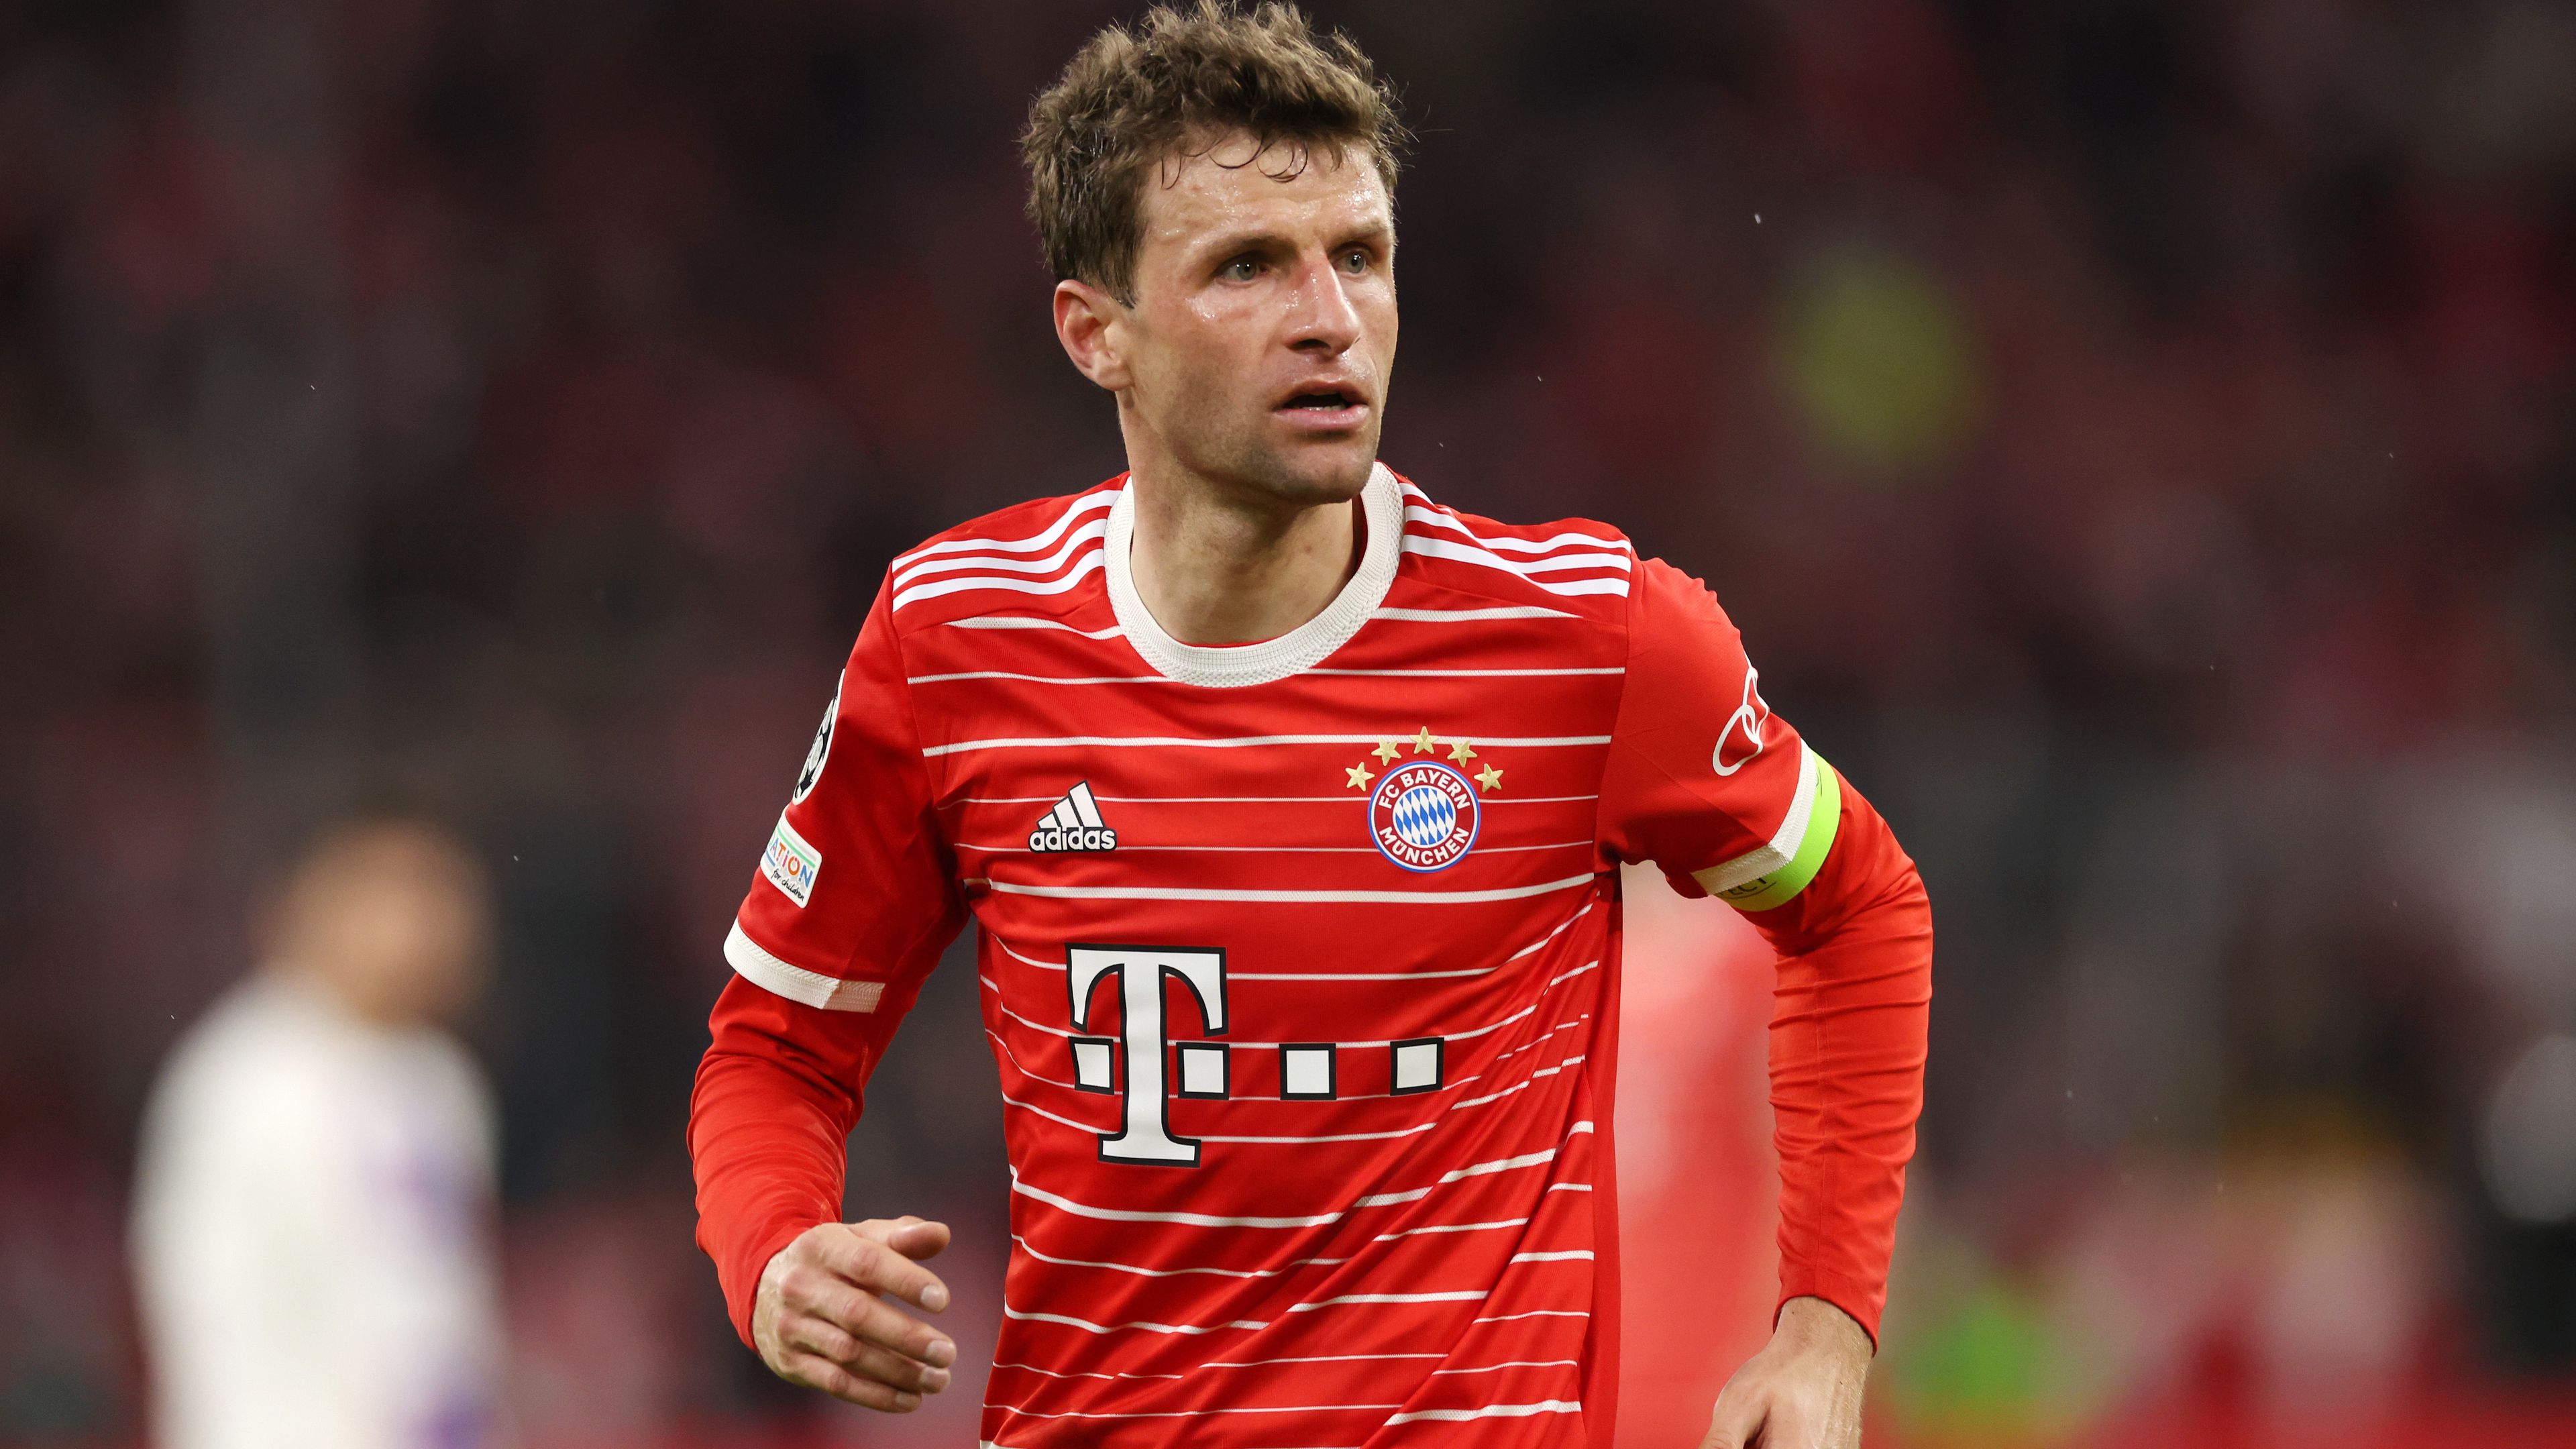 A PSG szerint a Bayern túl erős volt; Thomas Müller úgy véli, a szerencse is velük volt